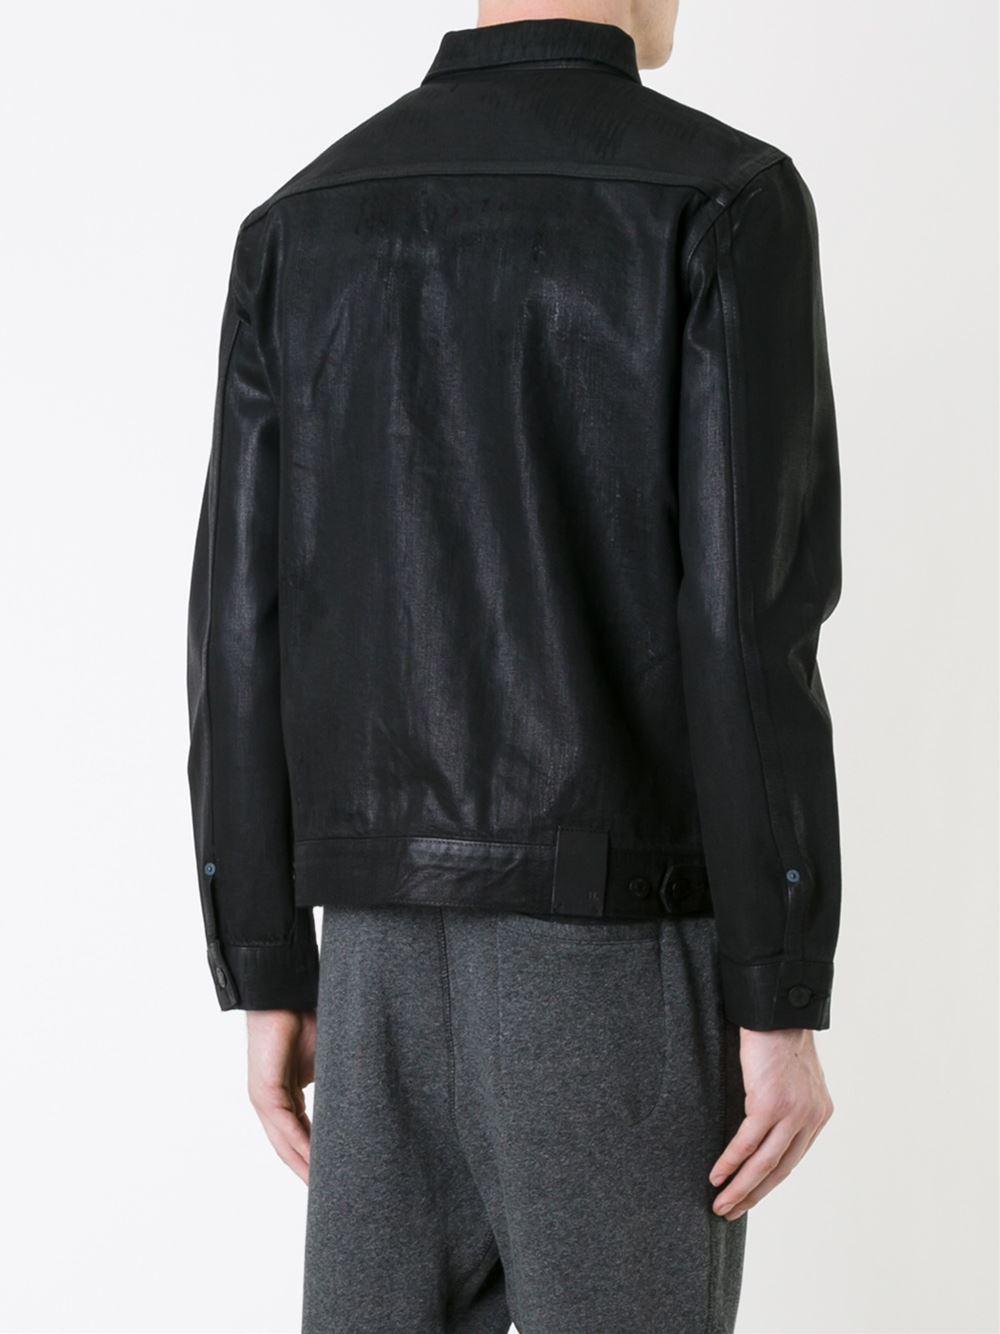 Lyst - Hl Heddie Lovu Coated Denim Jacket in Black for Men